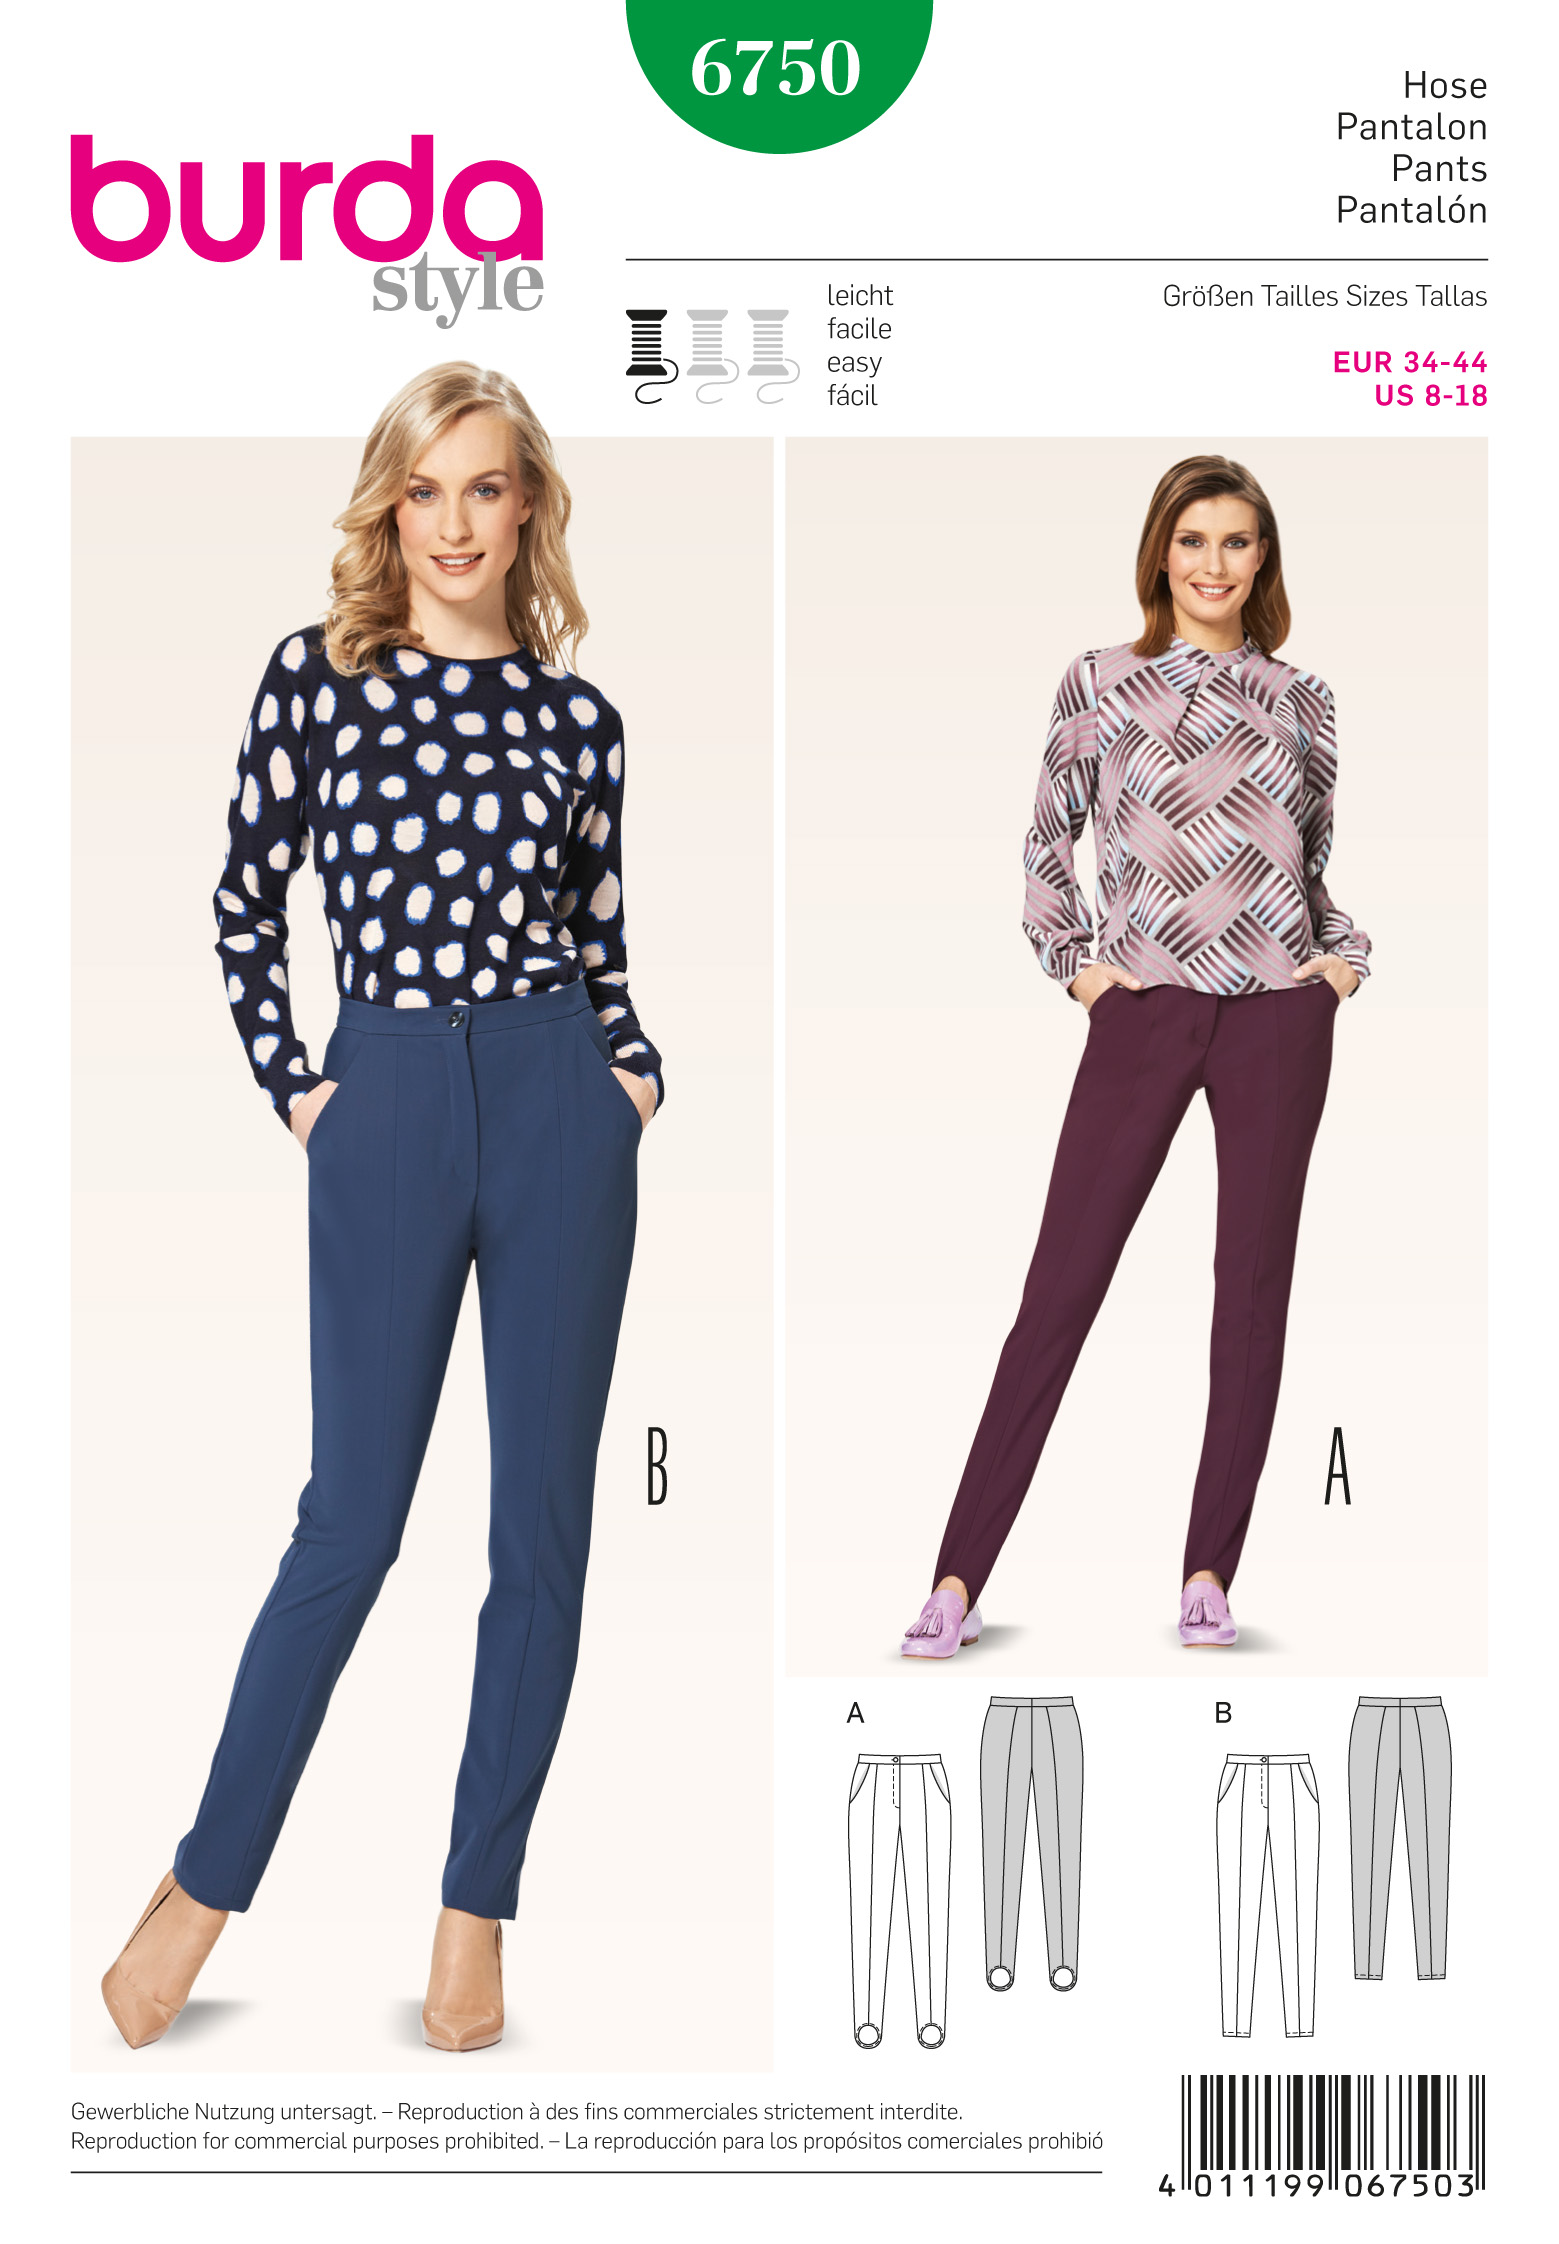 Burda 6750 Misses' Slim Pants sewing pattern